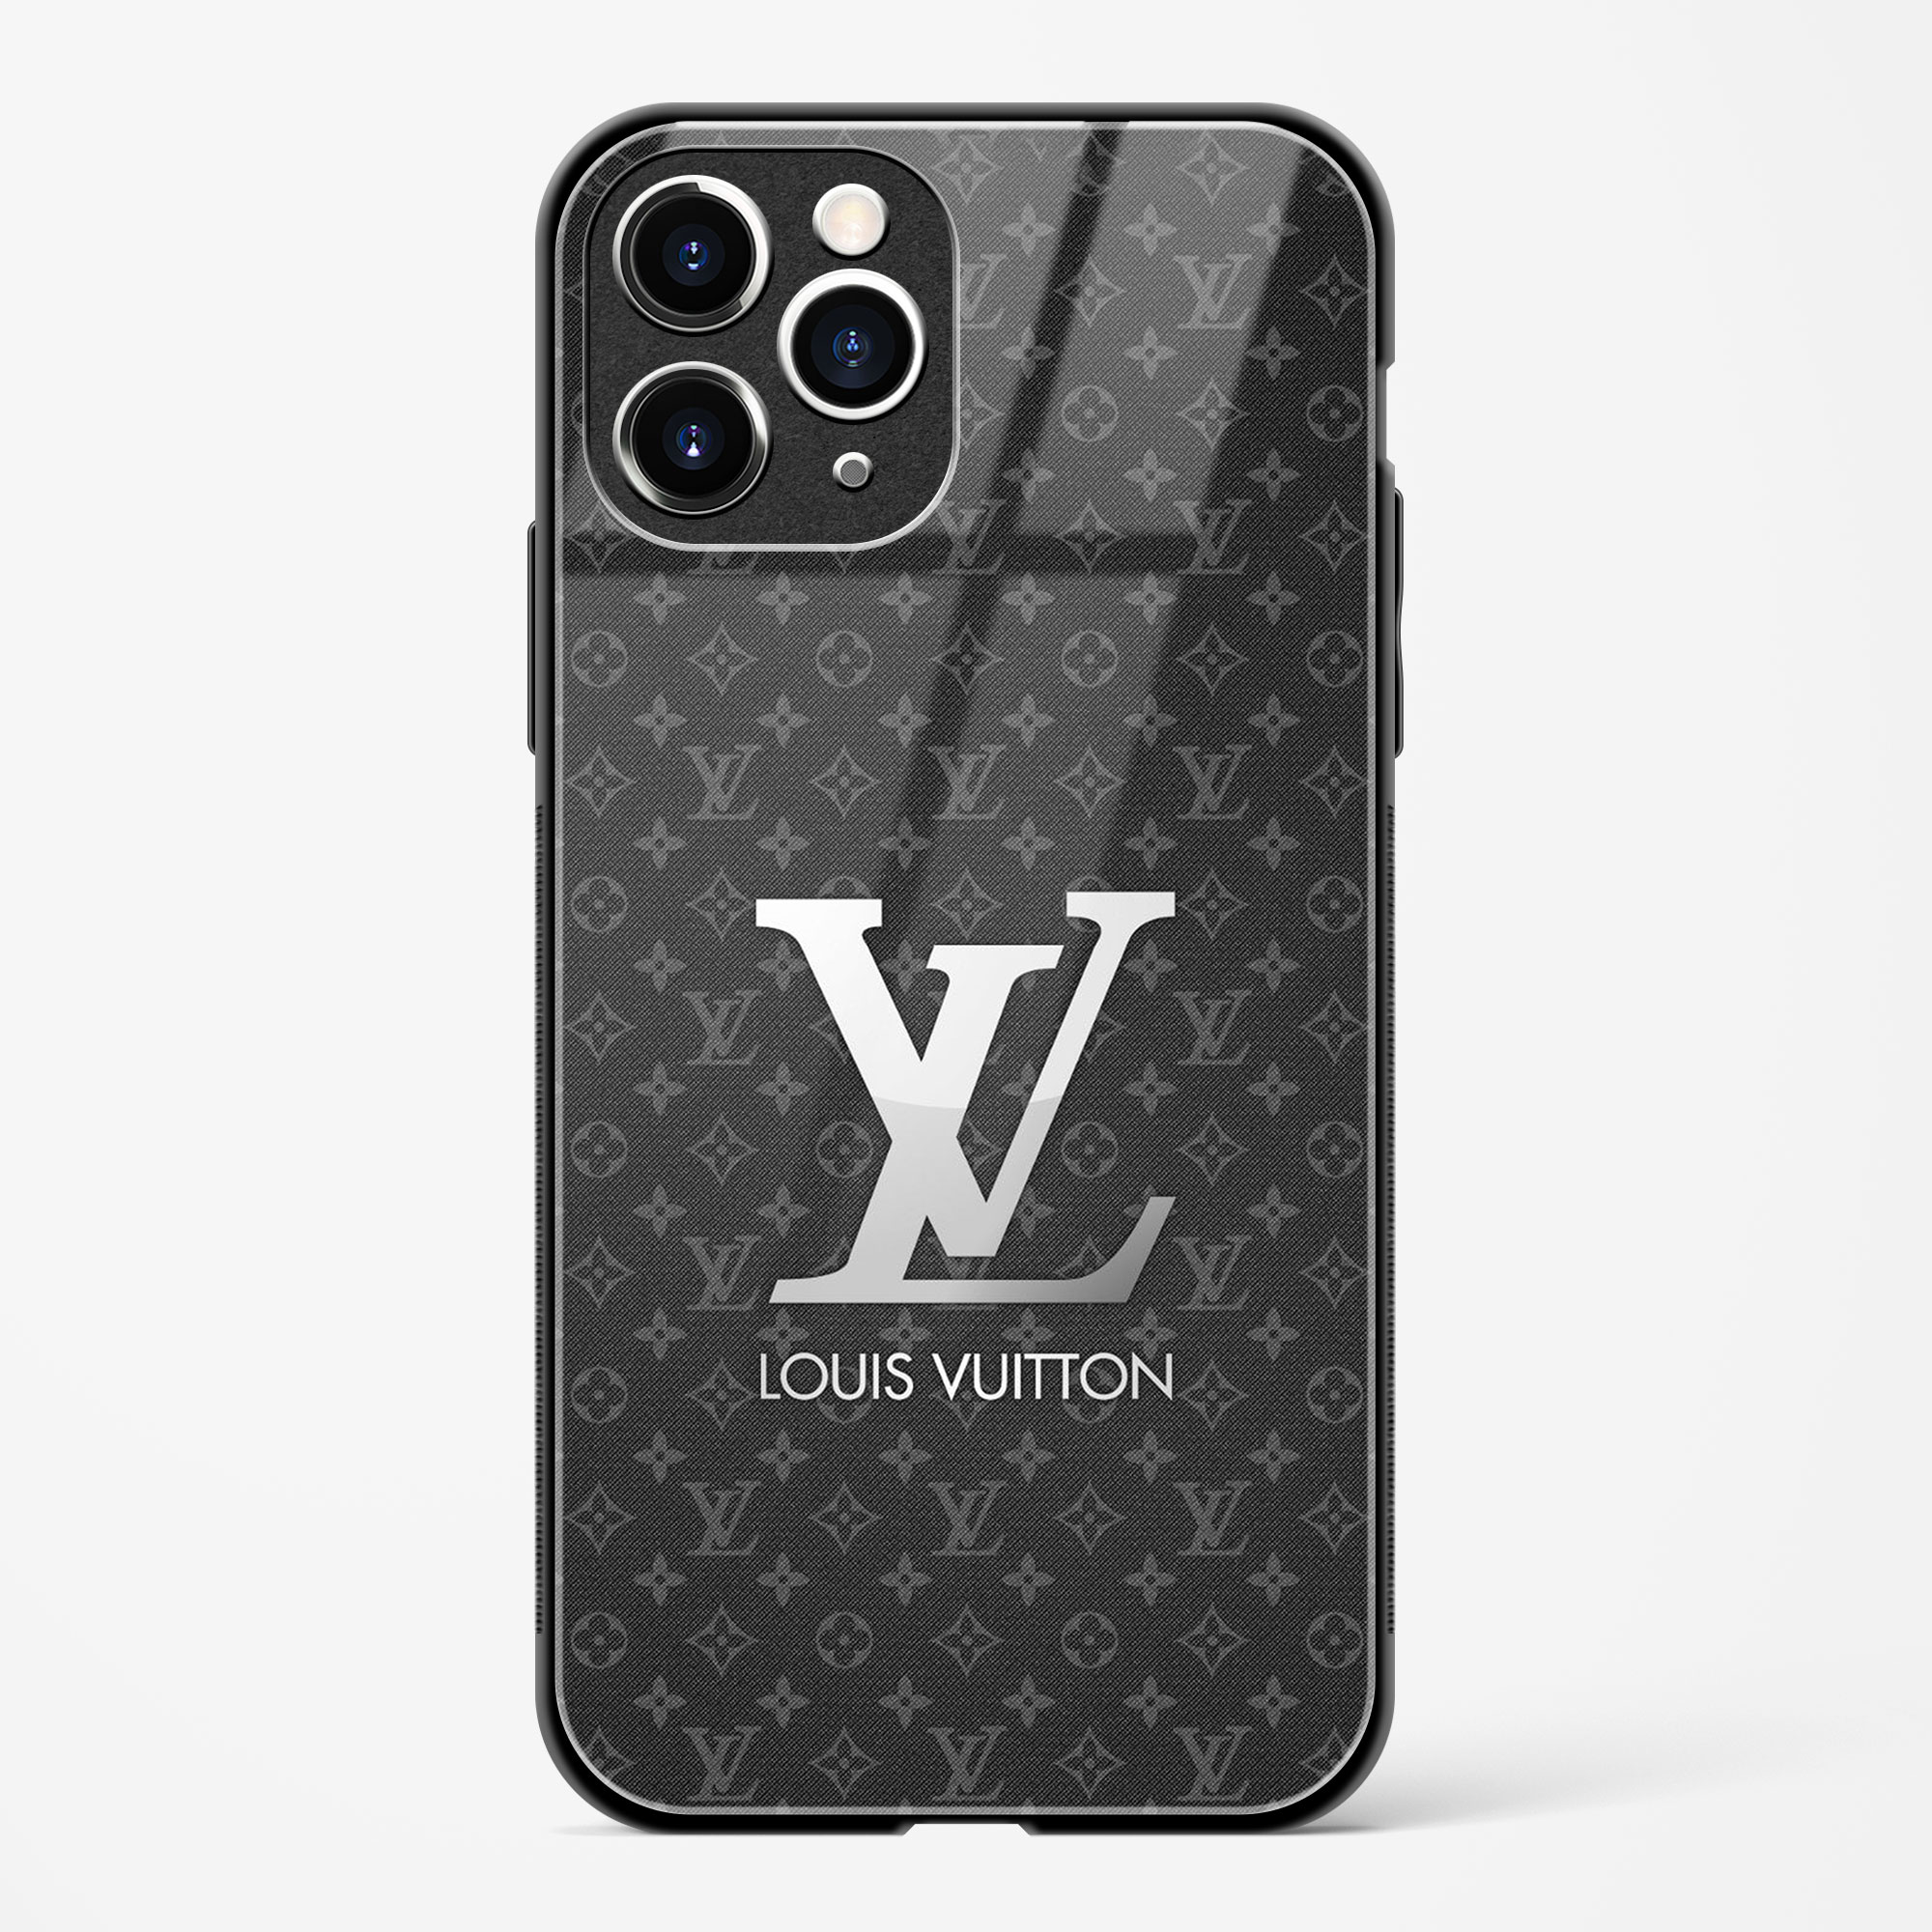 Louis Vuitton Apple iPhone 11 Pro Max Case